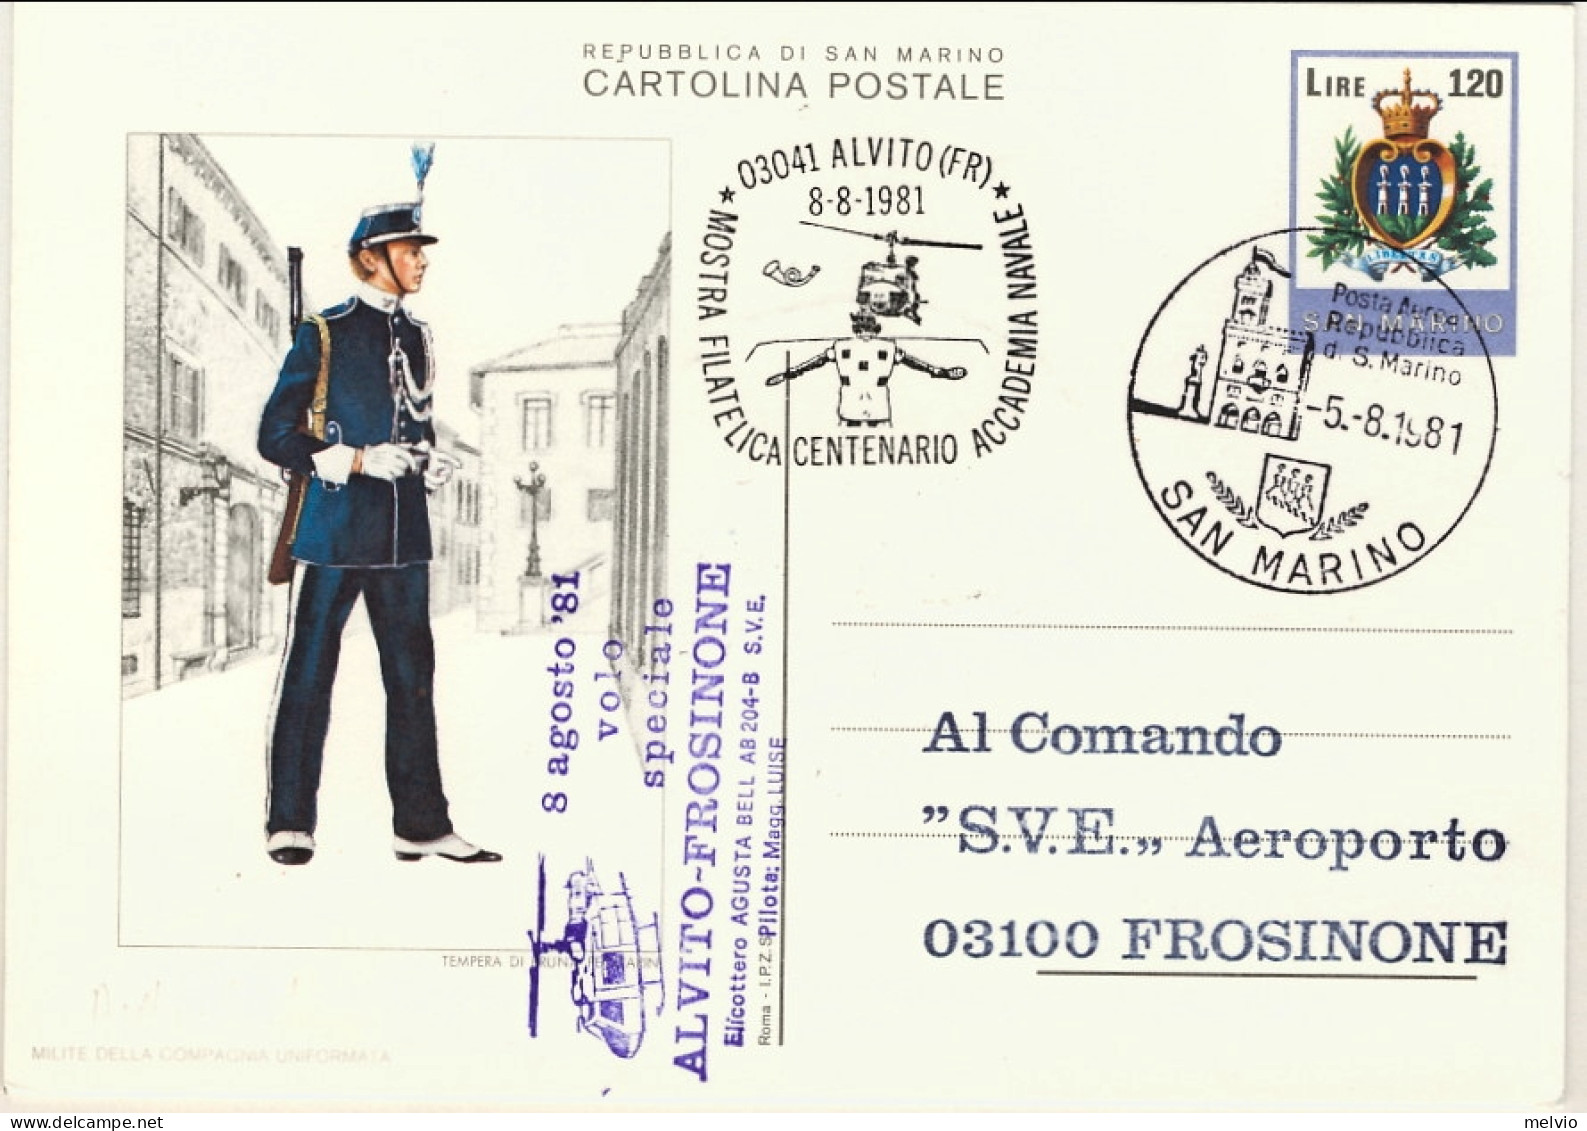 San Marino-1981 Cartolina Postale L.120 Stemma Mostra Filatelica Del Centenario, - Luftpost